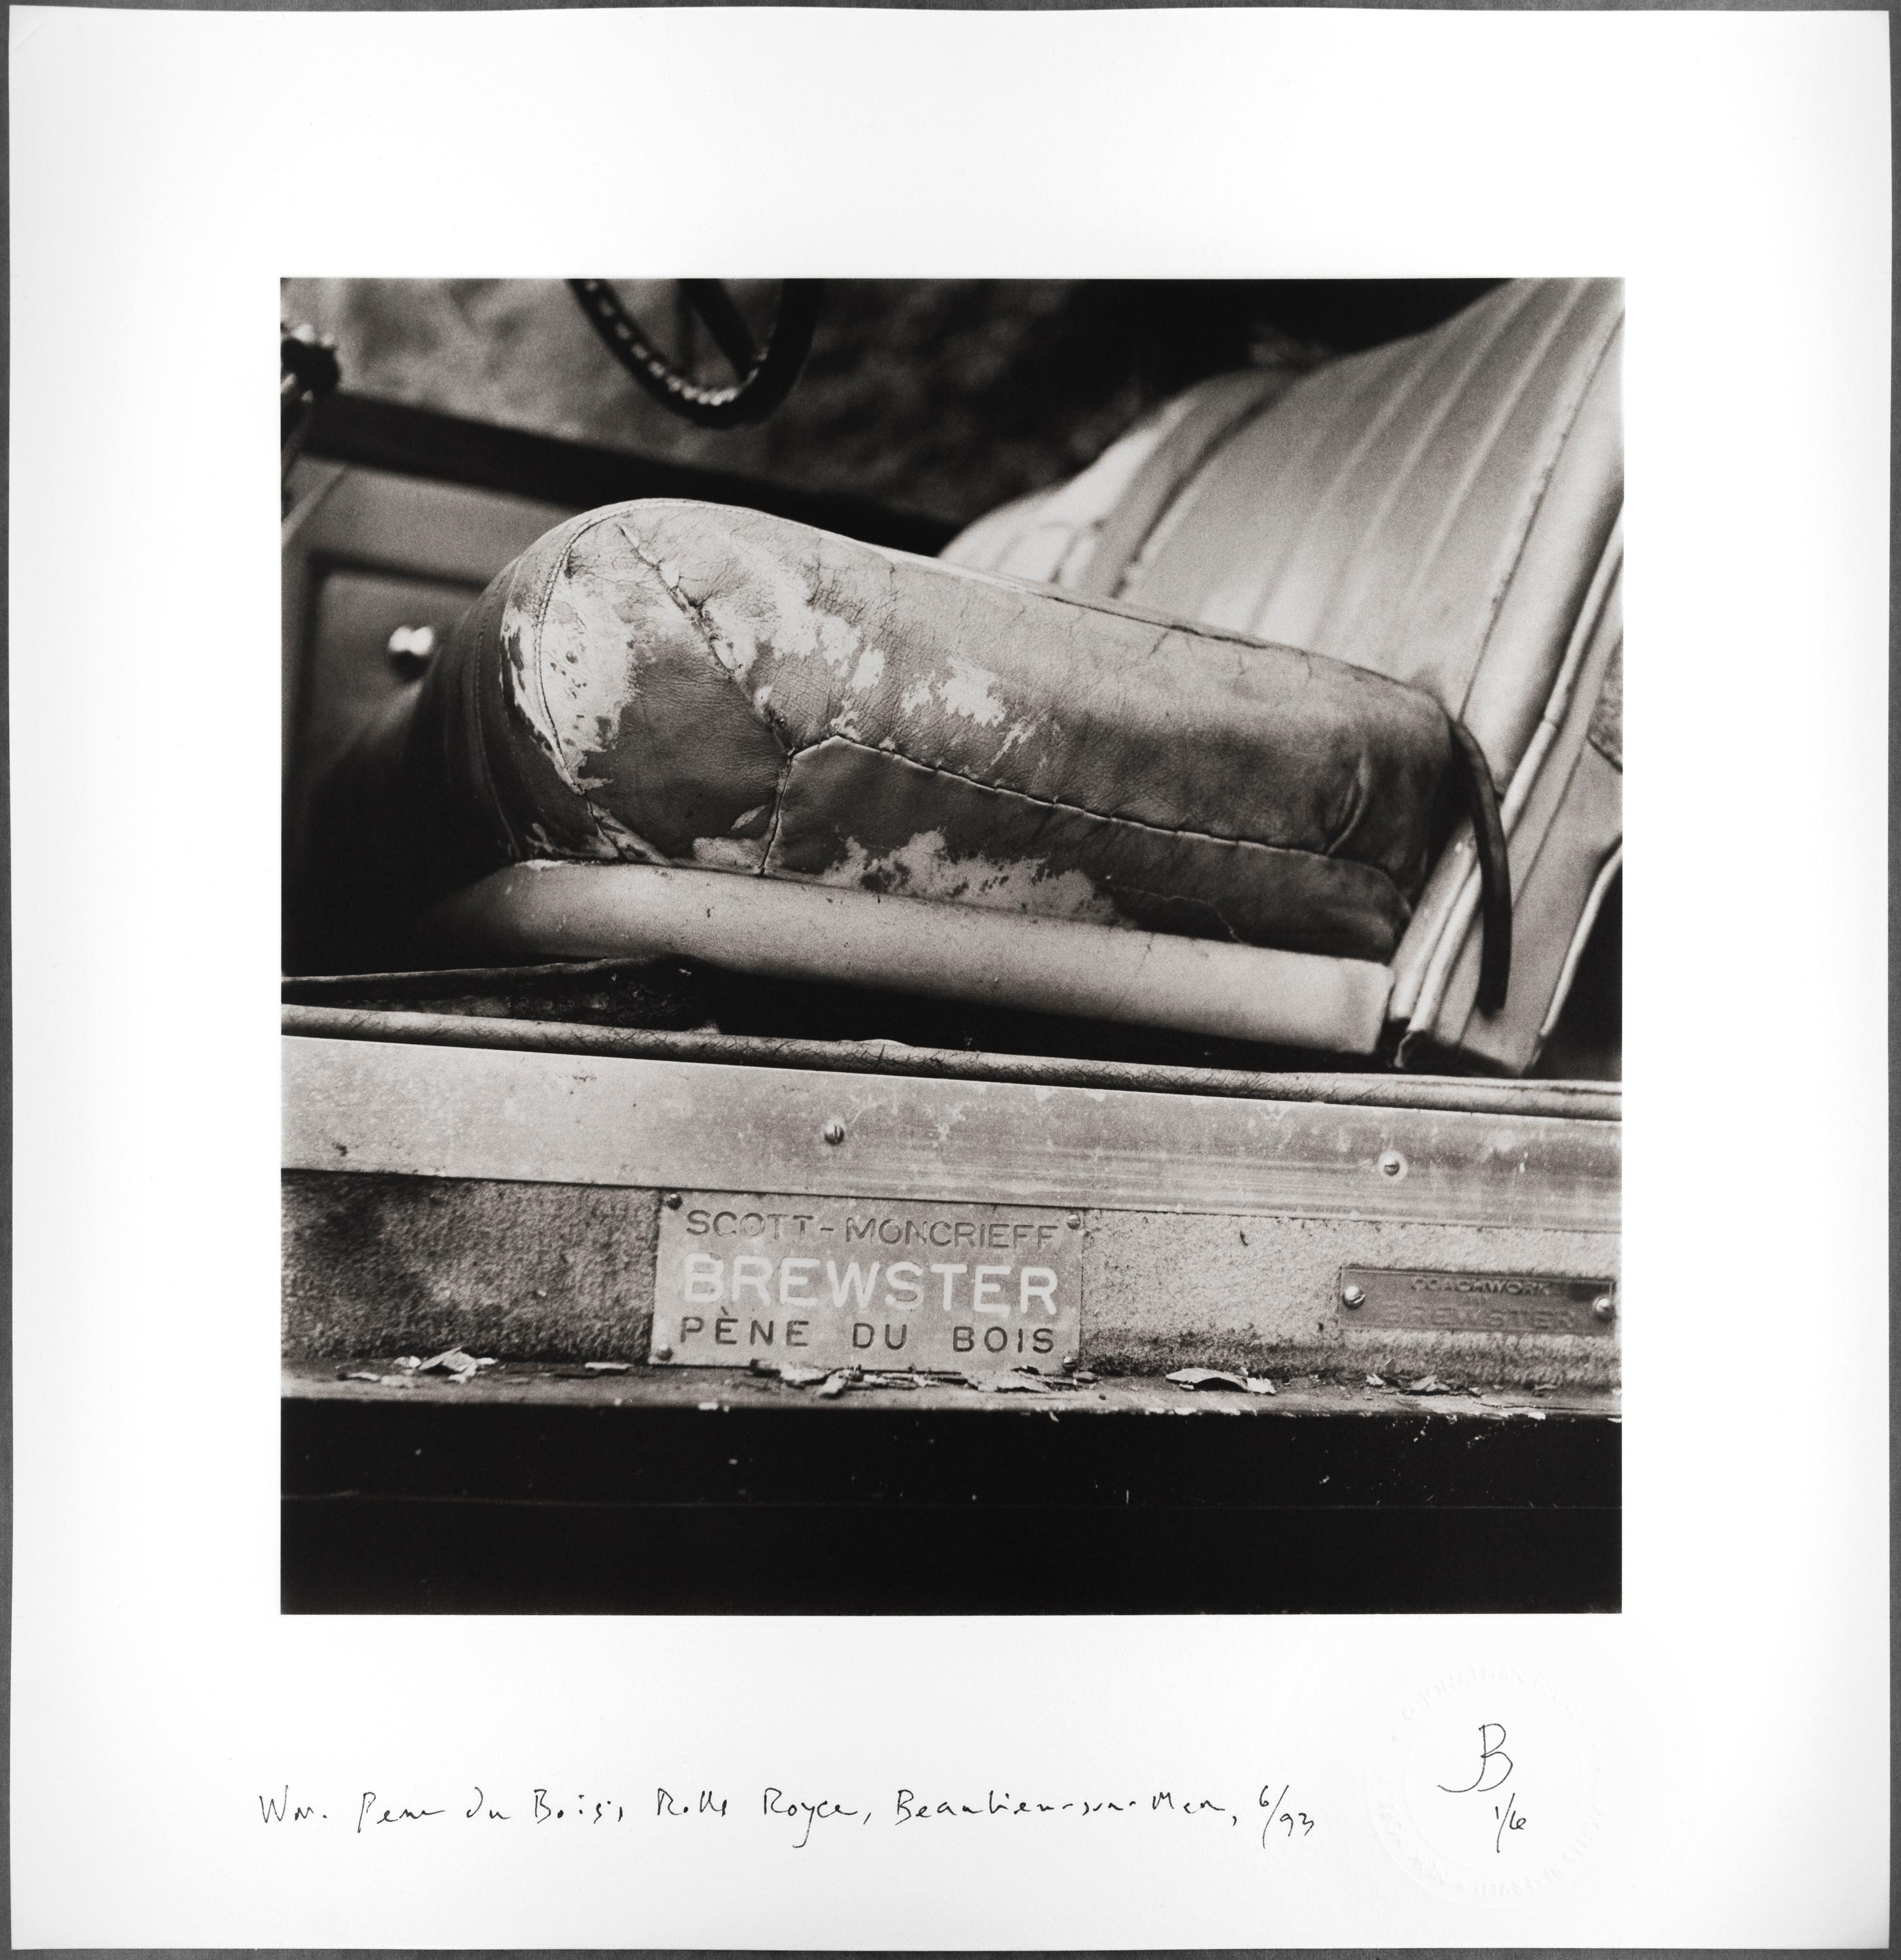 Jonathan Becker Still-Life Photograph - Wm. Pène du Bois’s Rolls Royce, Beaulieu-sur-Mer, June 1993